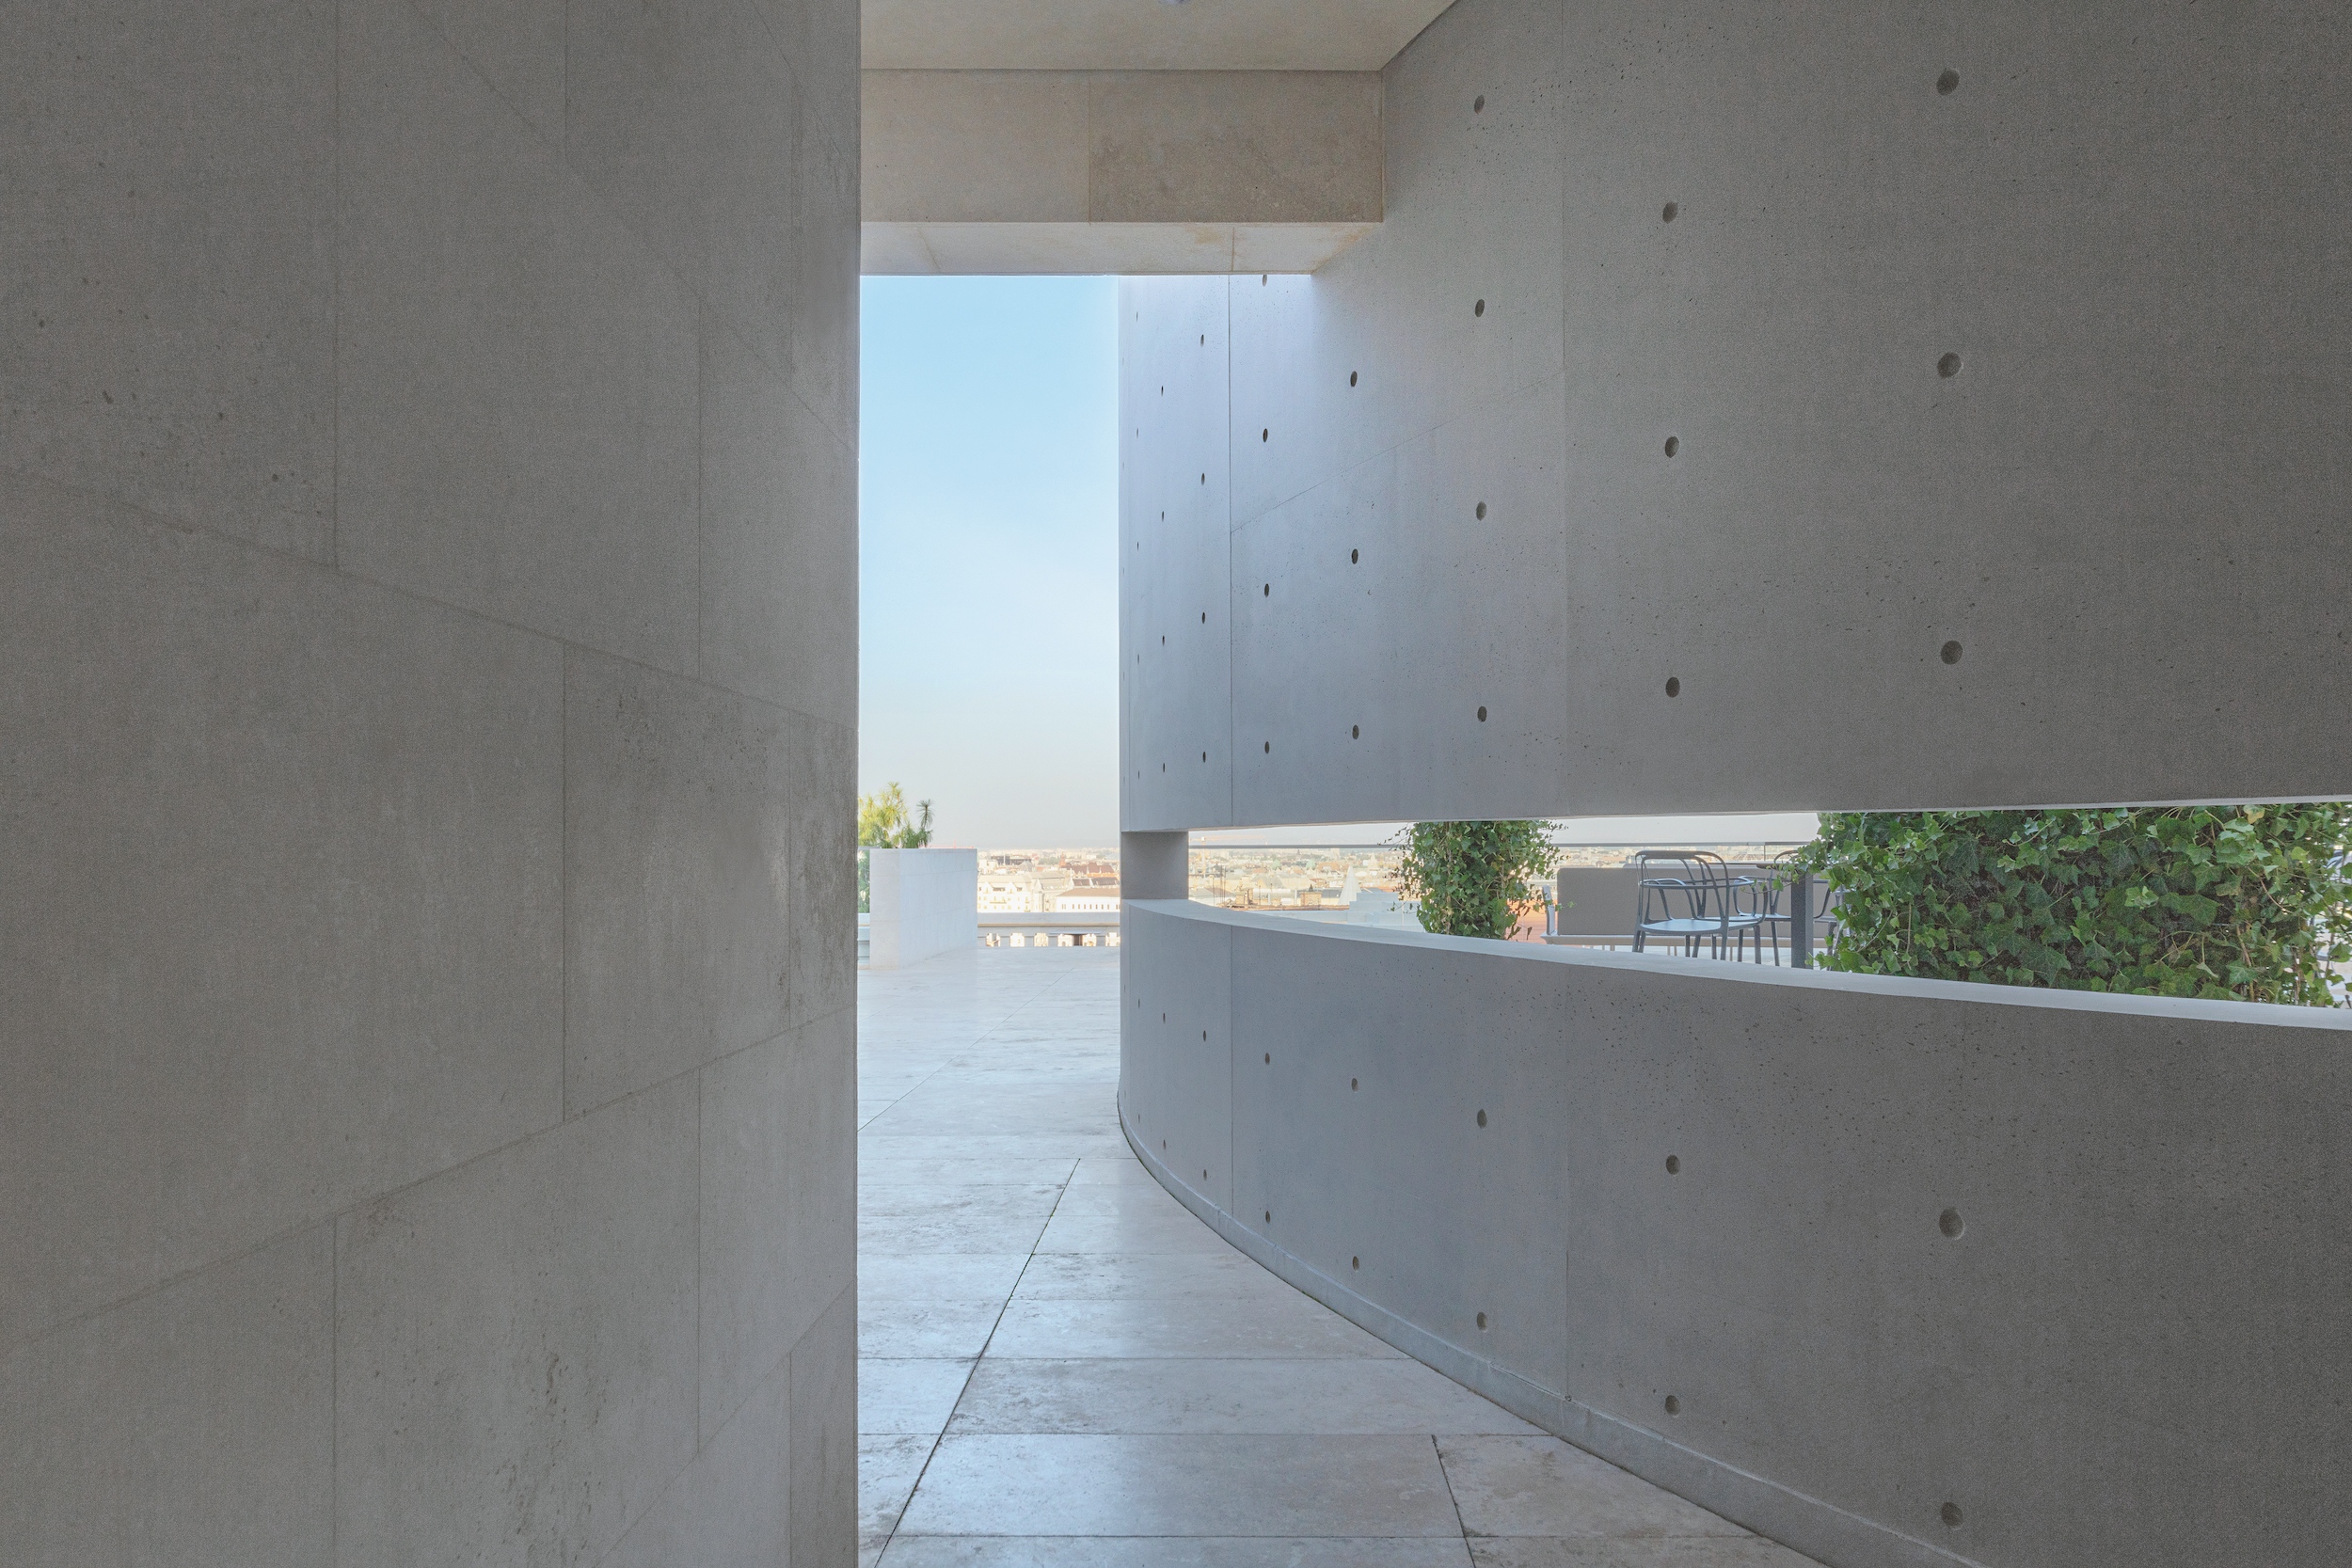 Mint önálló képzőművészeti objektum, egyfajta kortárs szobrászati alkotás jelenik meg a jellegzetes Tadao Ando-ív a teraszok szintjén